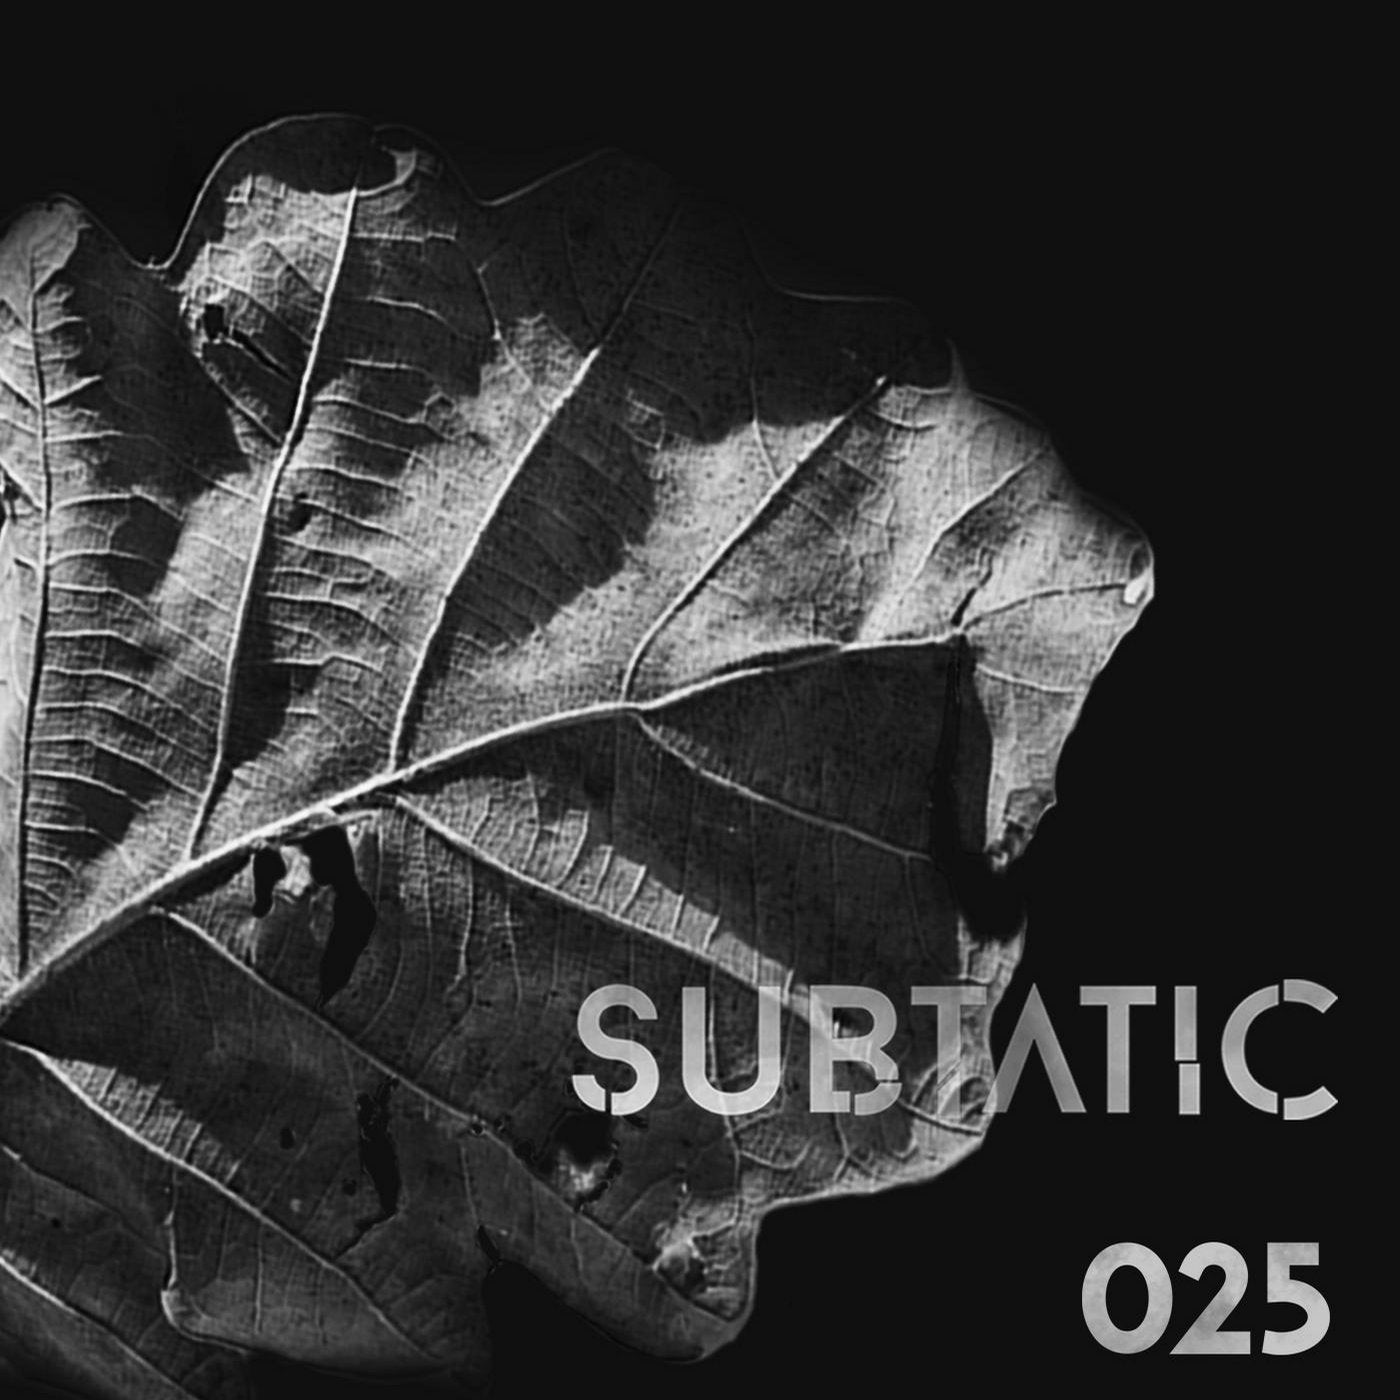 Subtatic 025